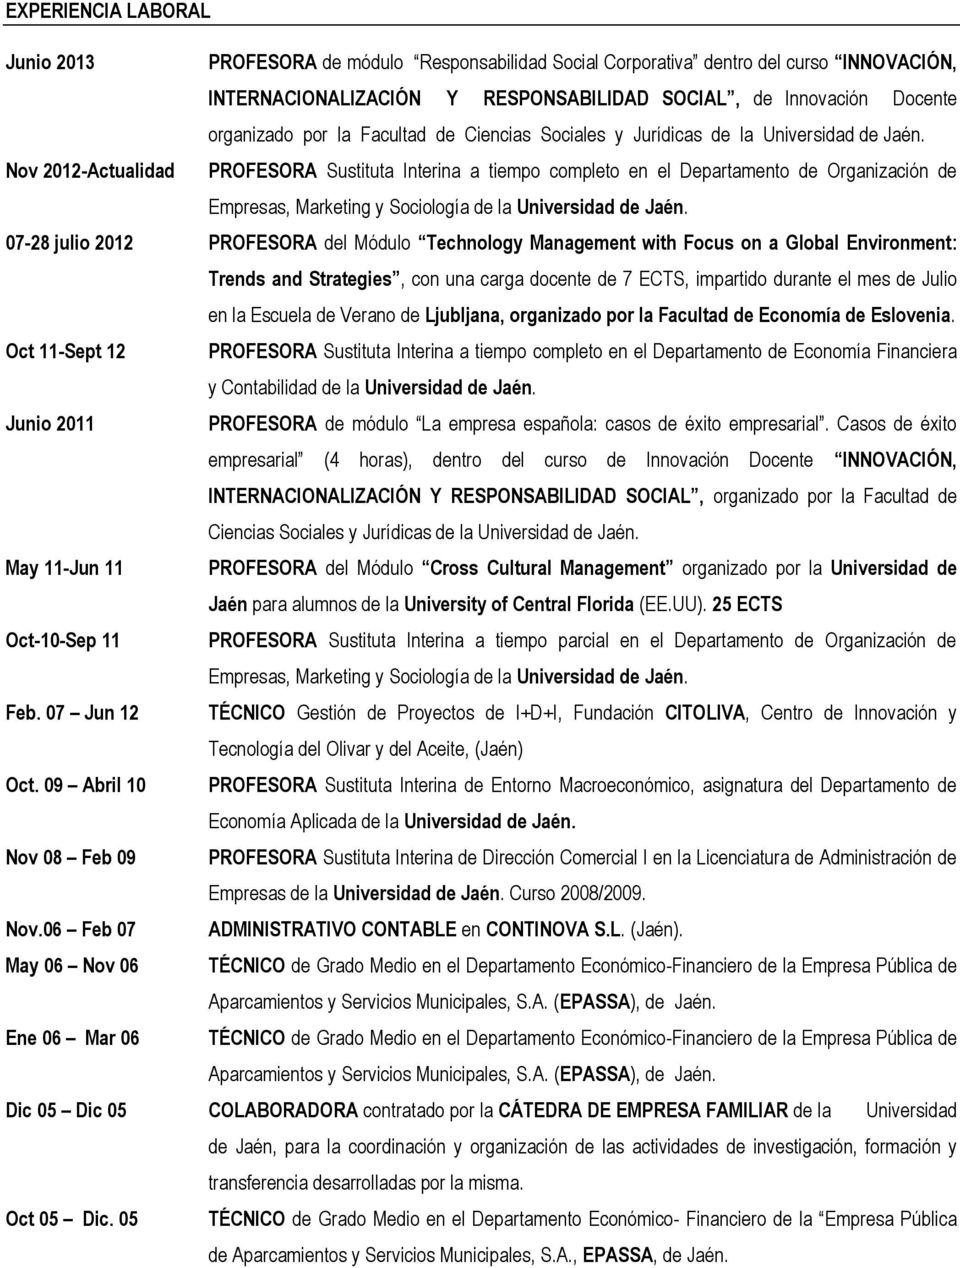 Nov 2012-Actualidad PROFESORA Sustituta Interina a tiempo completo en el Departamento de Organización de Empresas, Marketing y Sociología de la Universidad de Jaén.